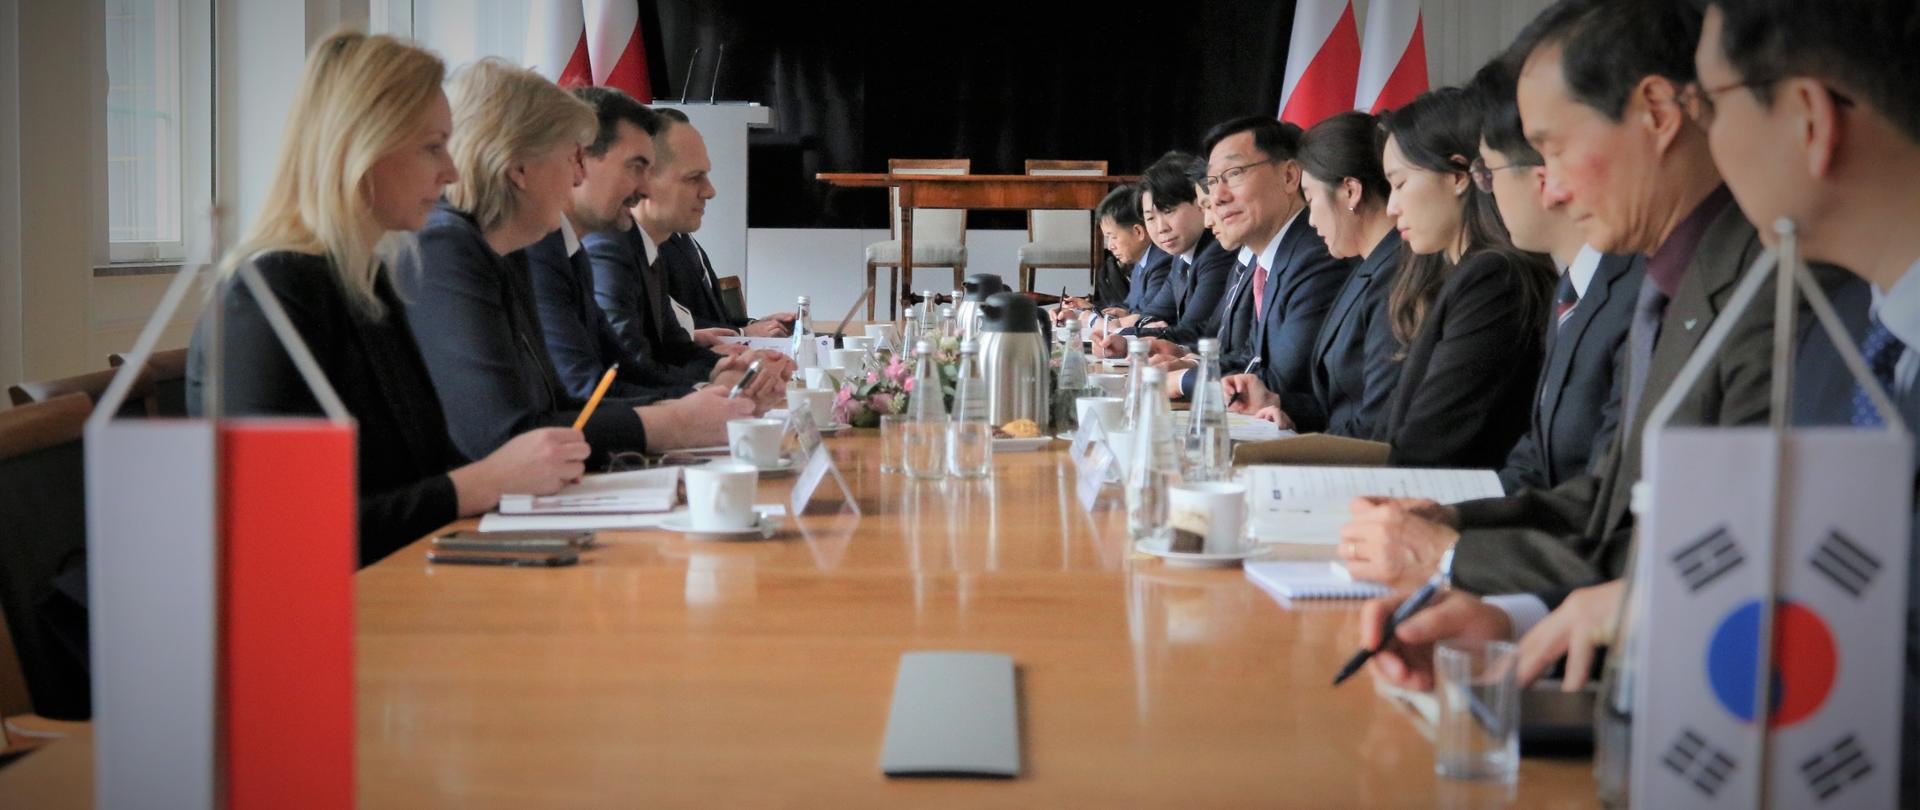 Spotkanie wiceministrów ds. transportu Polski i Korei Południowej